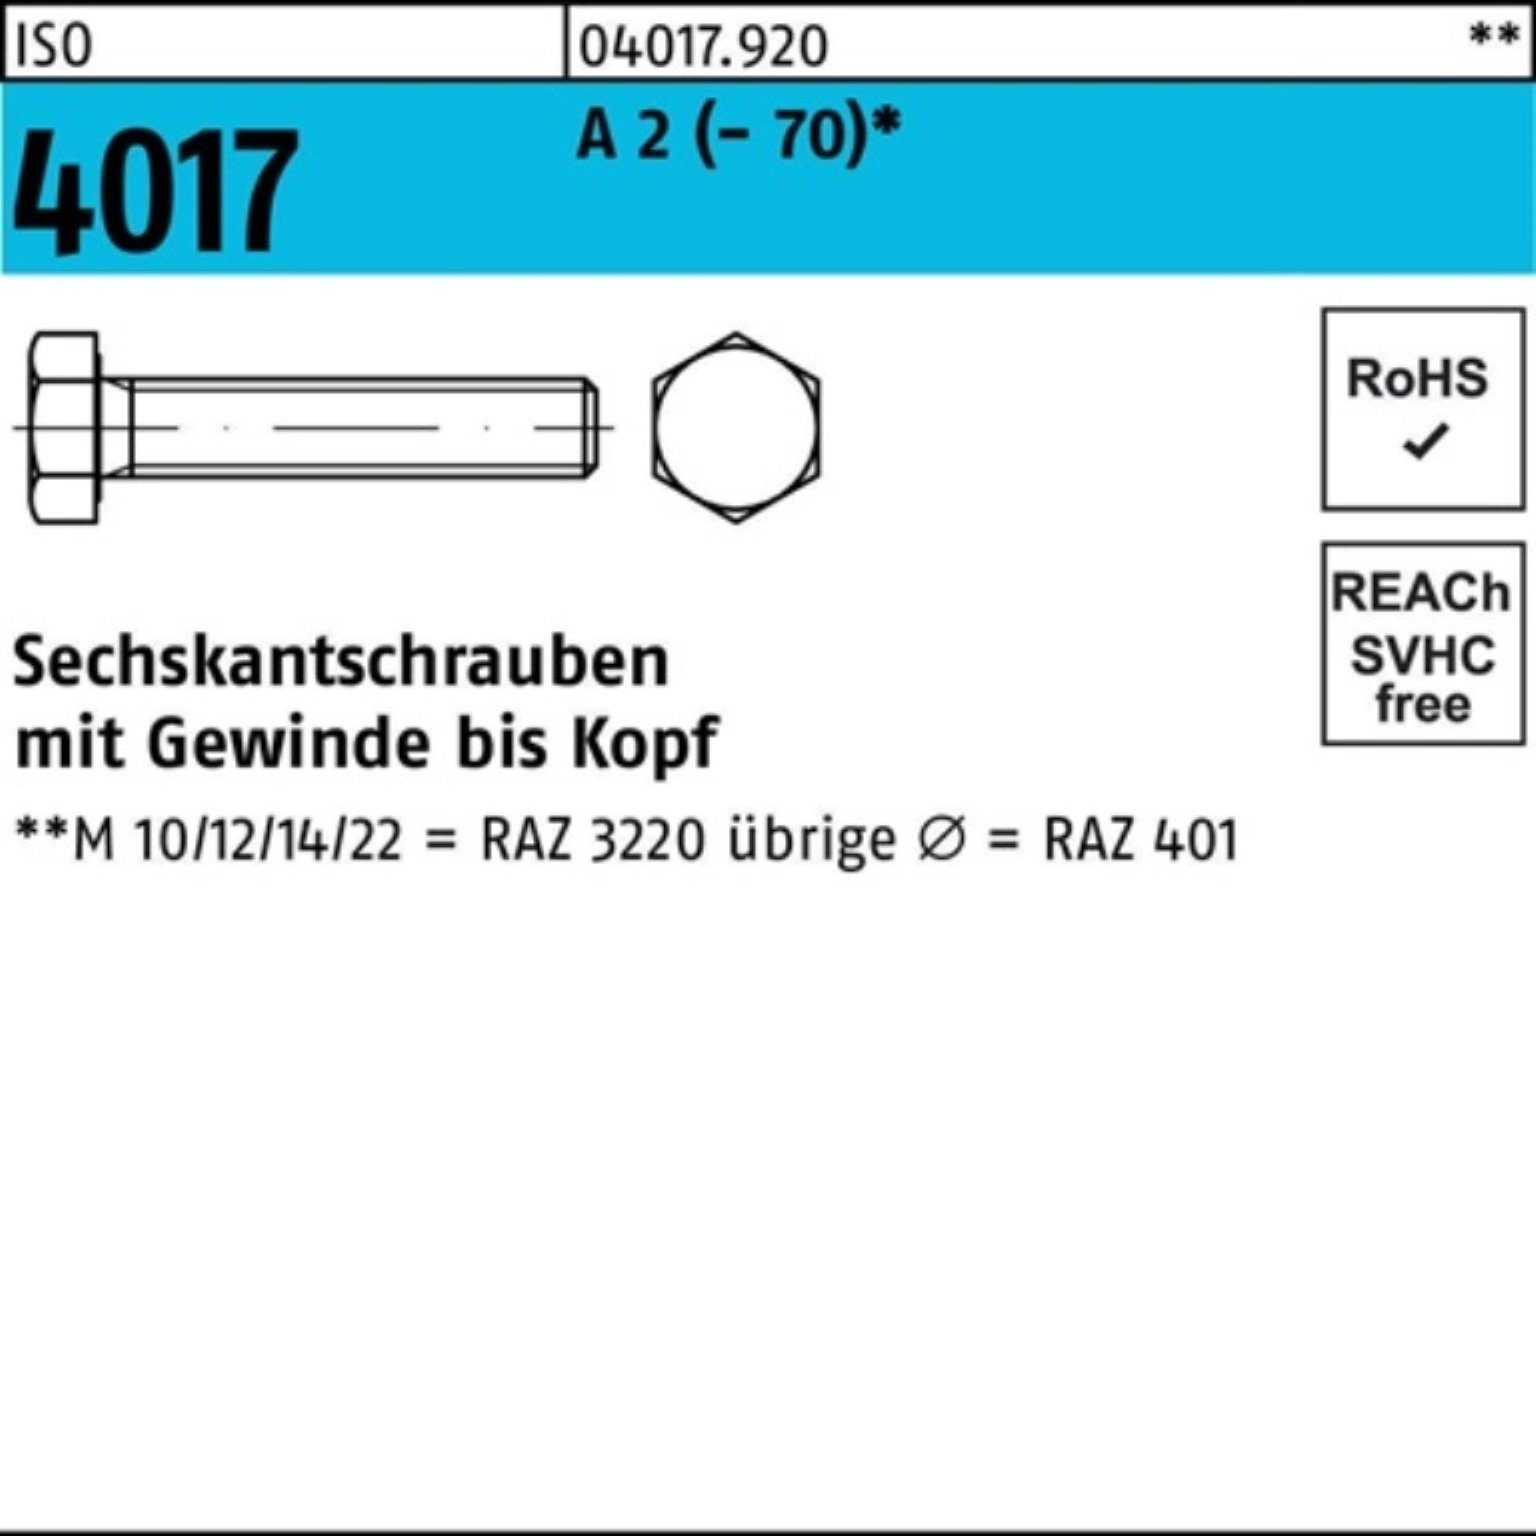 Bufab Sechskantschraube 100er Pack Sechskantschraube ISO 4017 VG M22x 55 A 2 (70) 1 Stück I